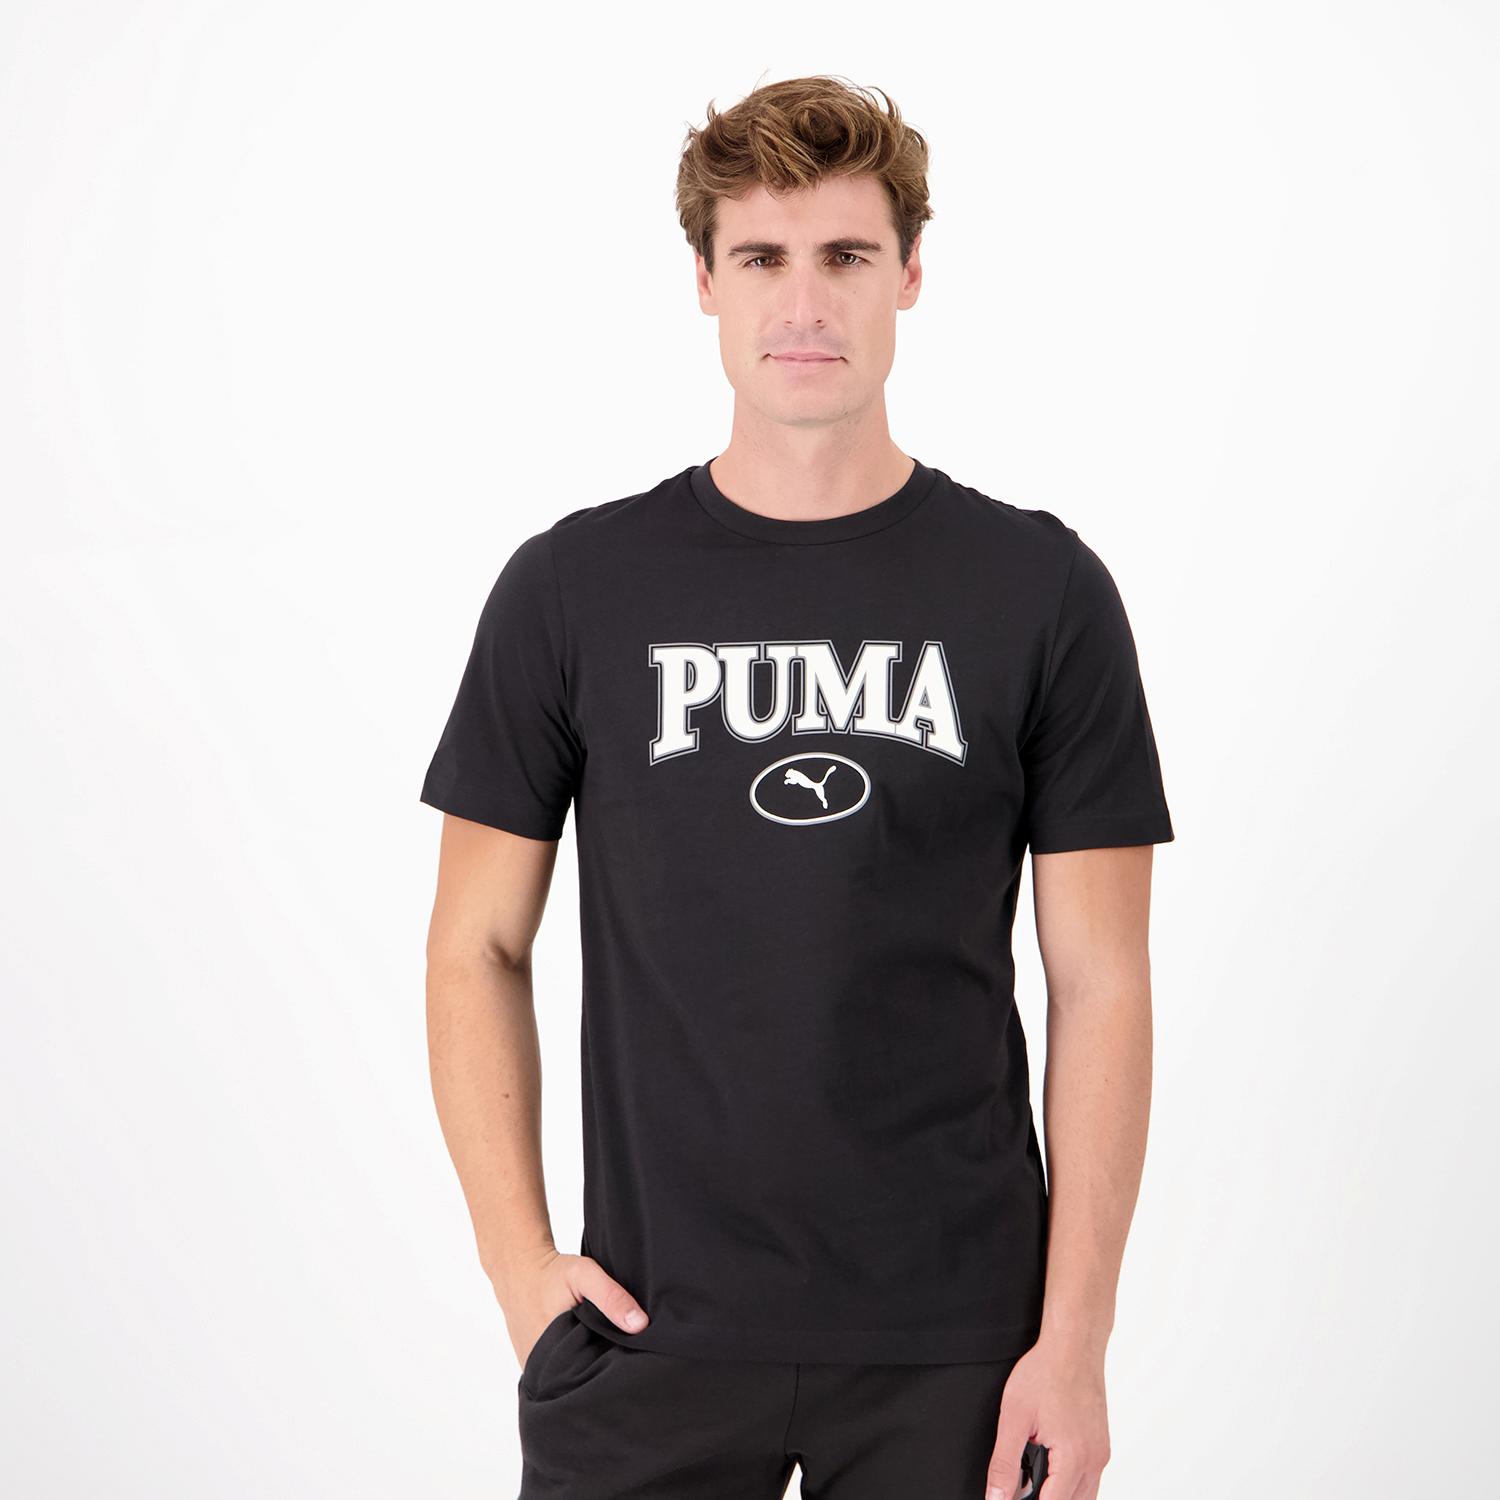 Chaqueta negro y blanco con letras blancas de la marca Puma de hombre.